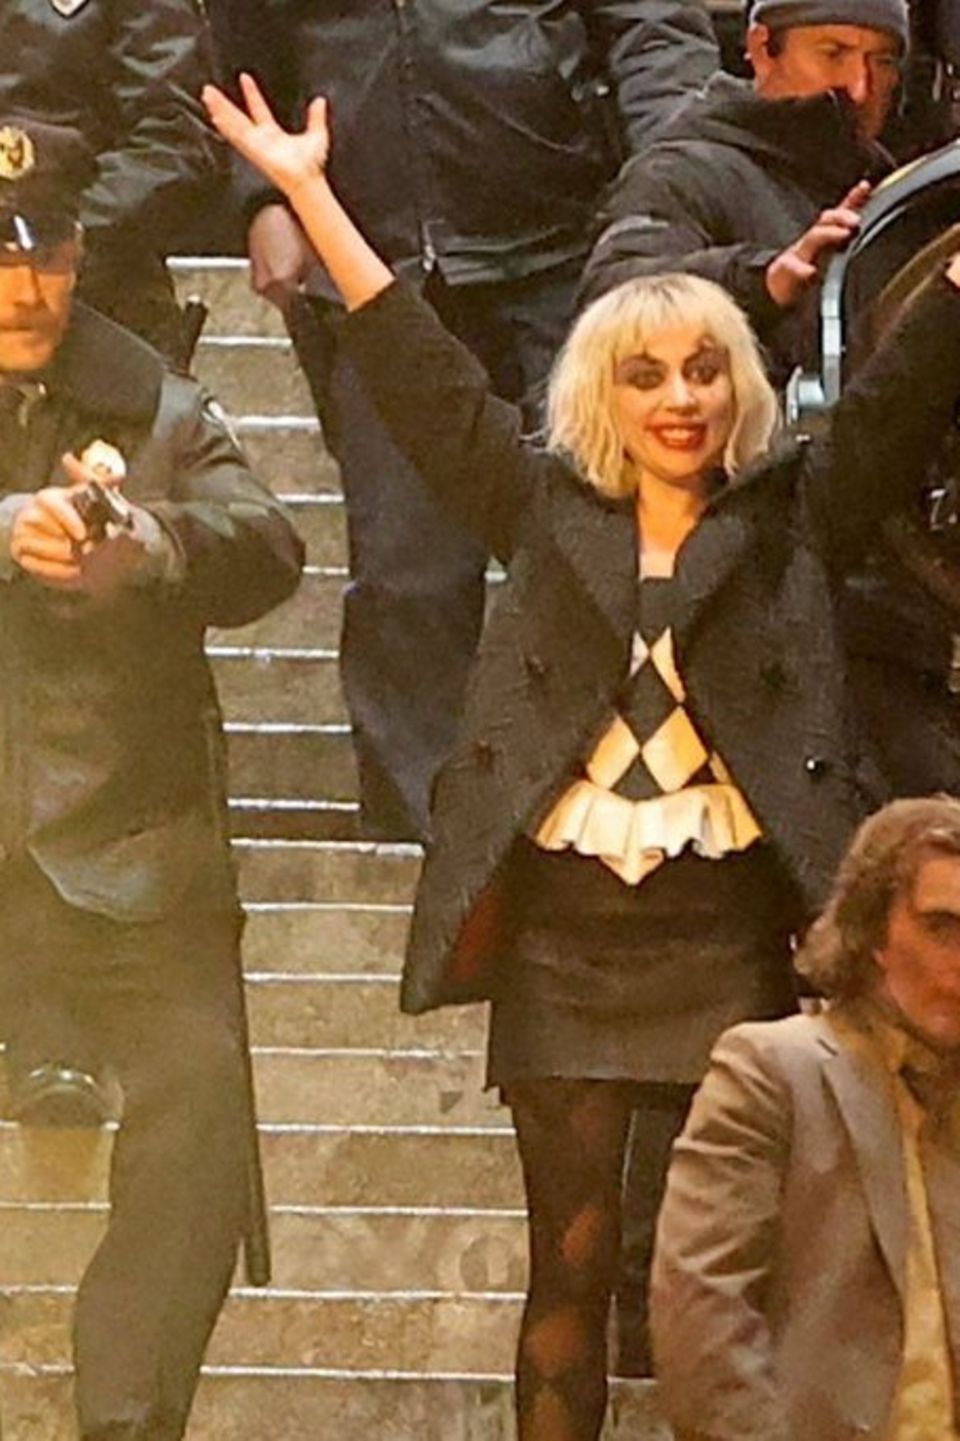 Joaquin Phoenix und Lady Gaga als Joker und Harley Quinn in "Joker: Folie á Deux".